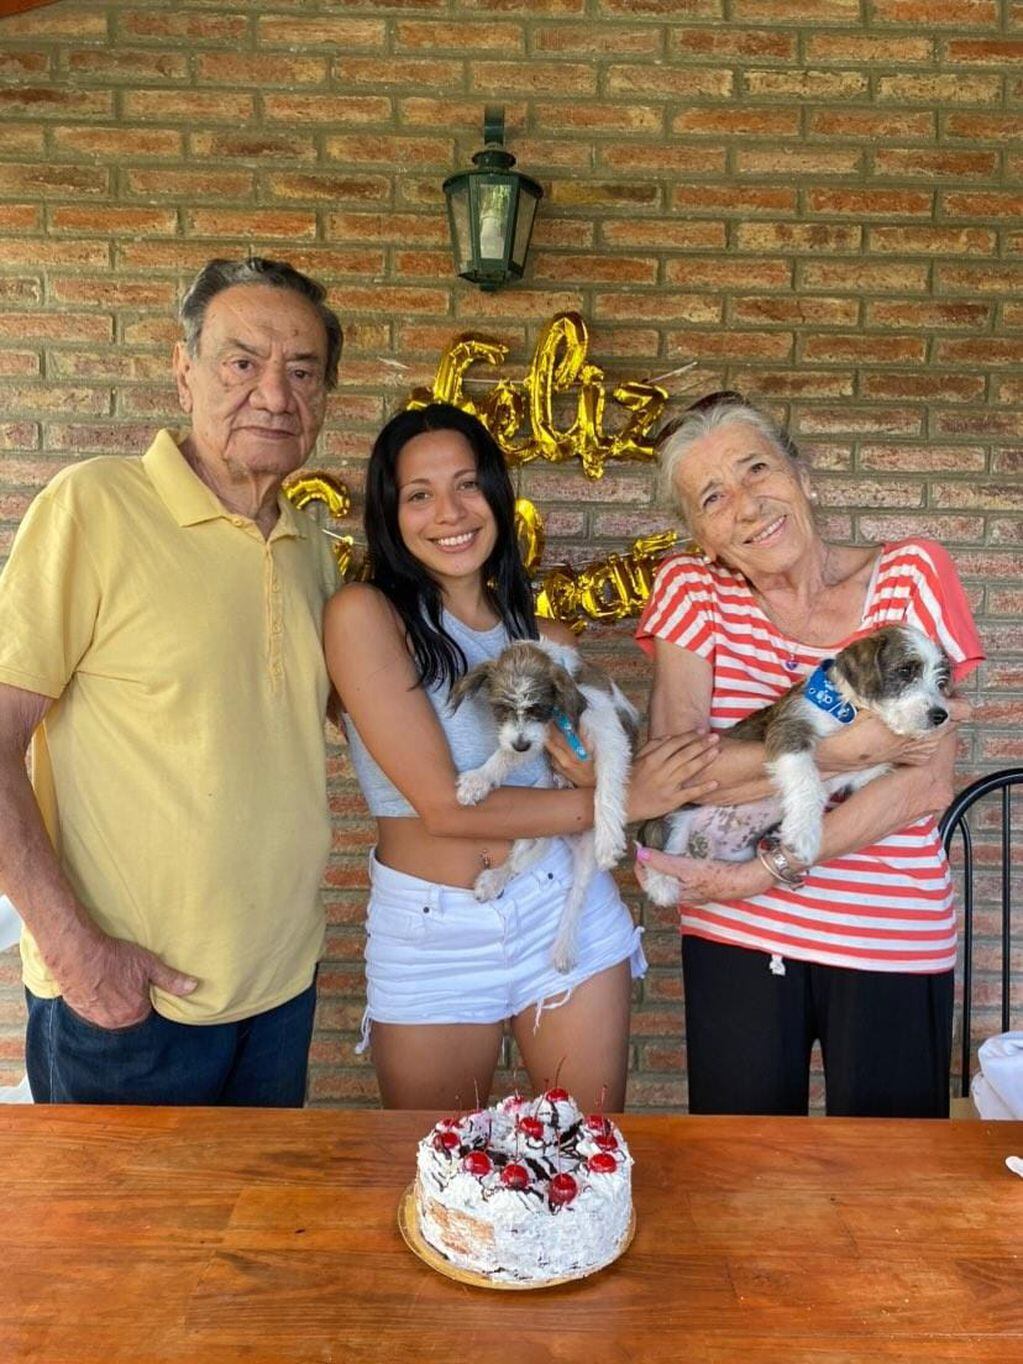 La joven regresó a Córdoba y el emocionante reencuentro con sus abuelos se volvió viral.